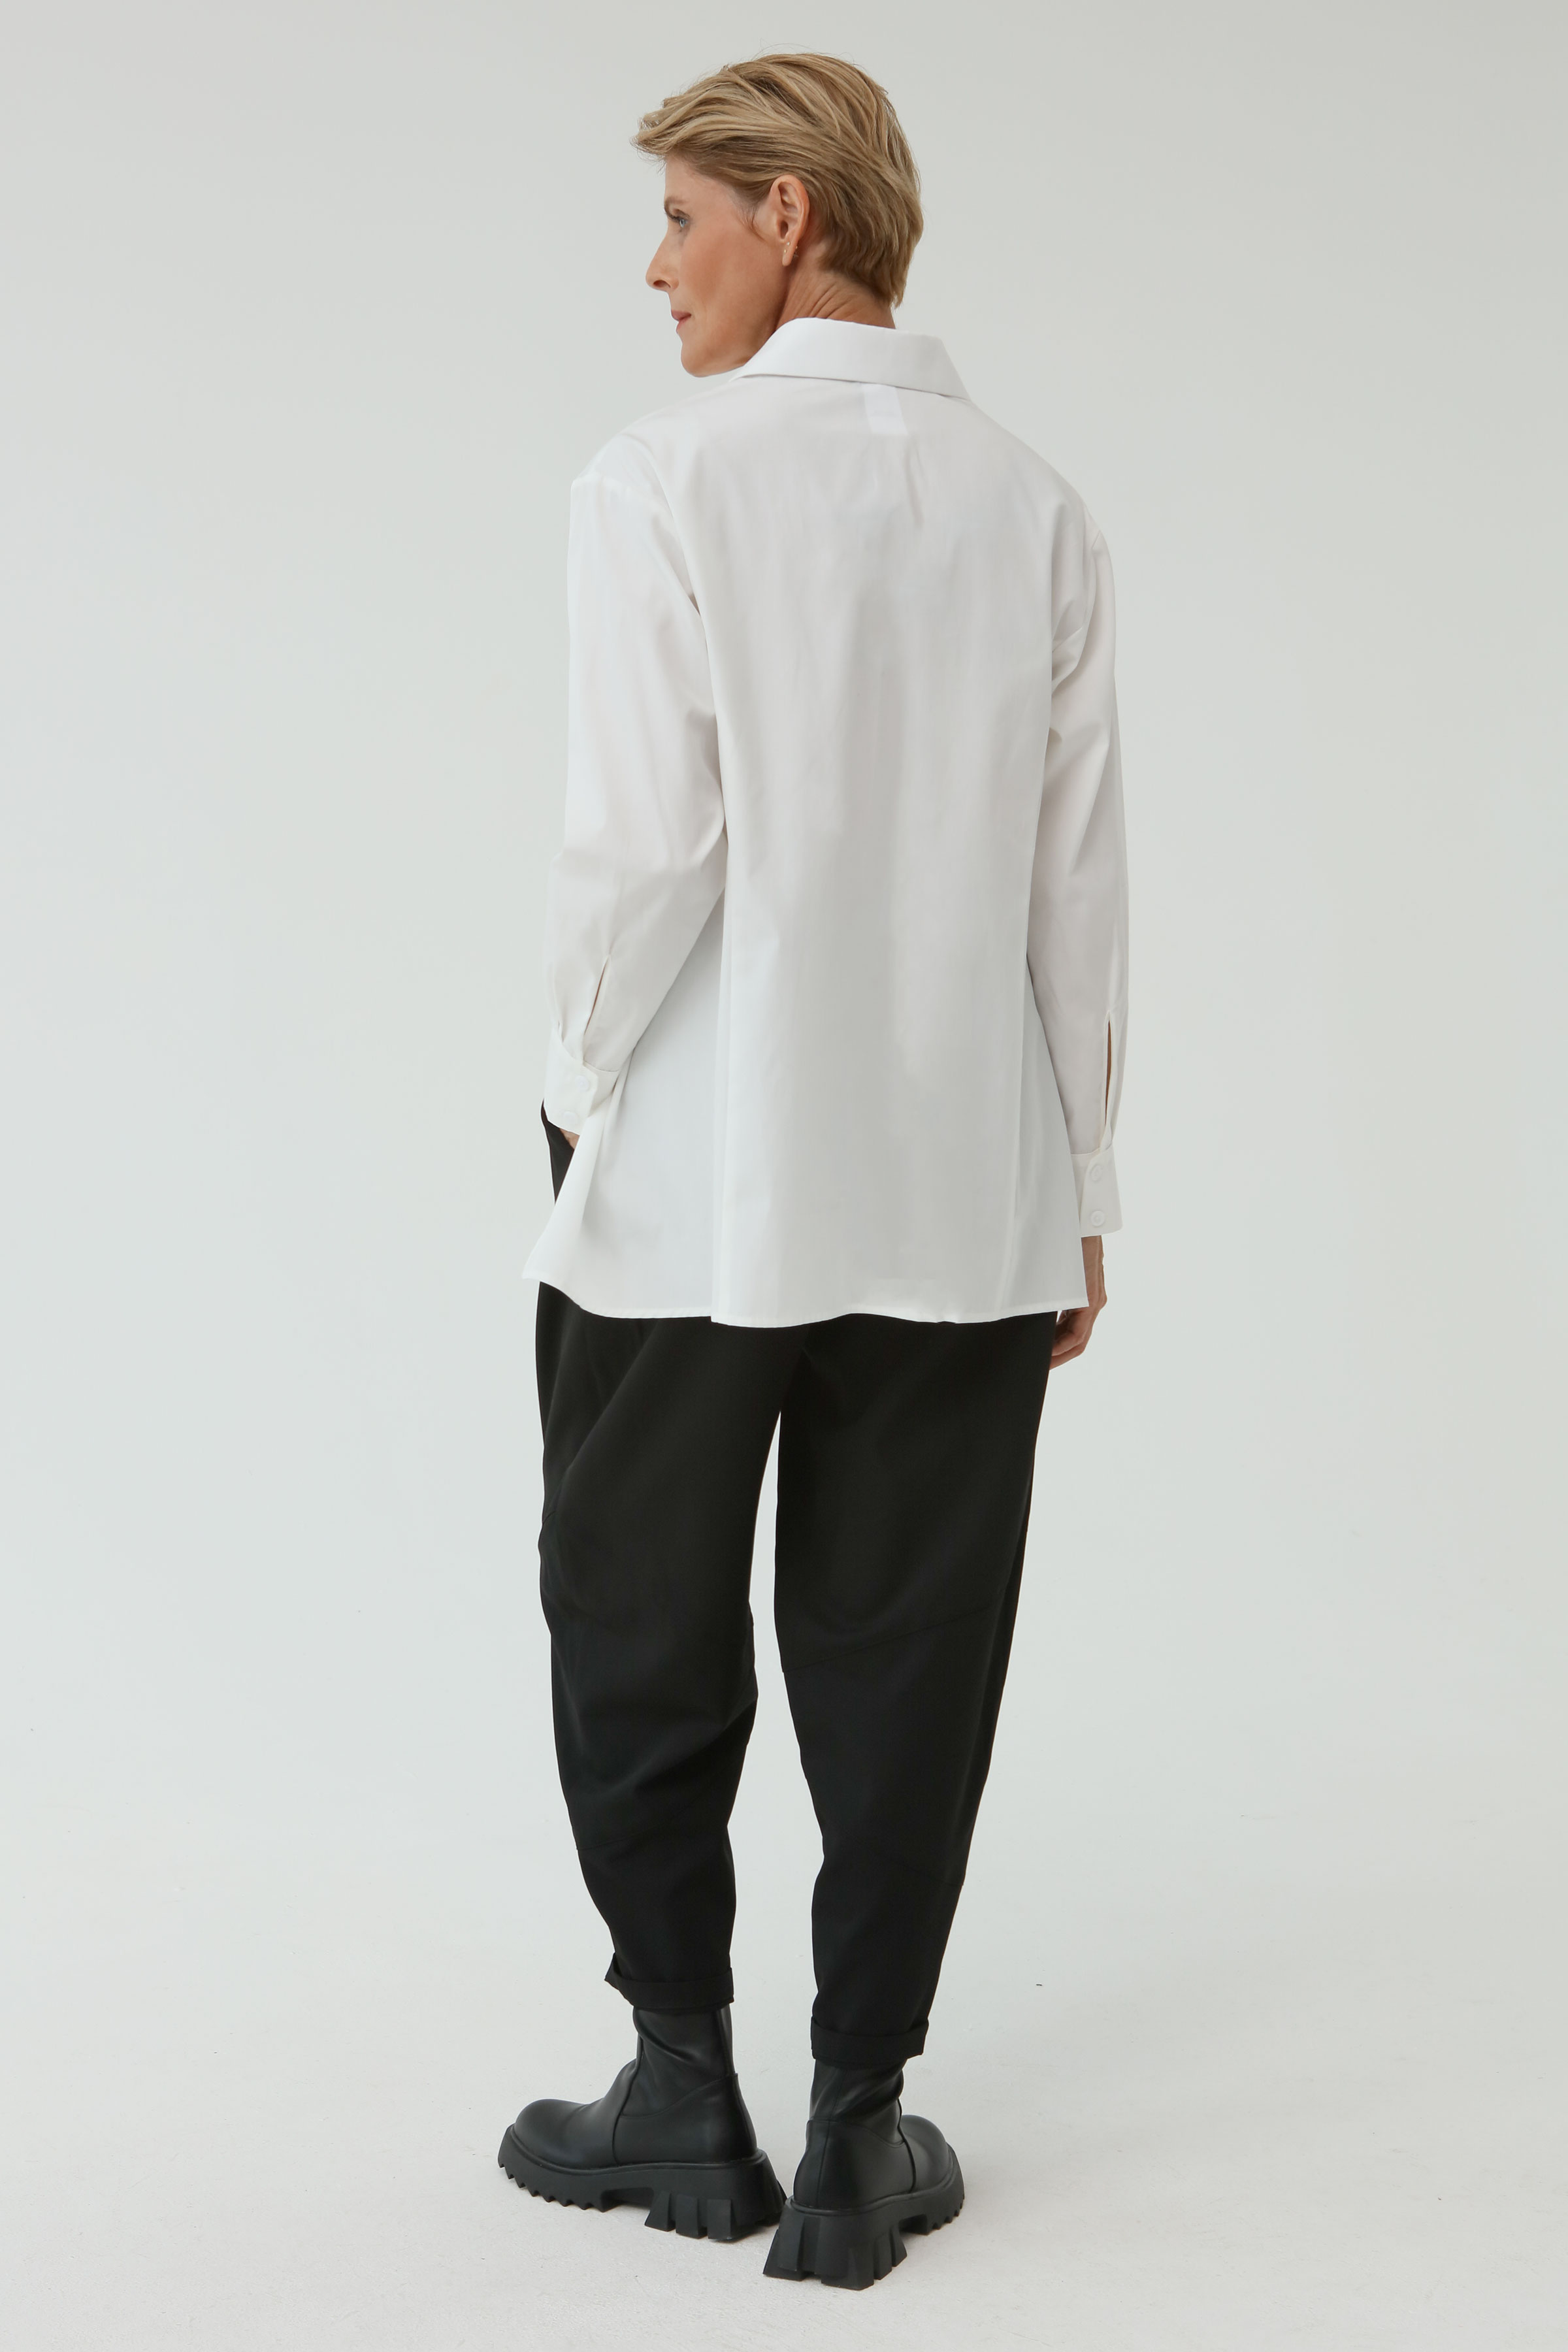 Блуза рубашка с удлиненной спинкой 03 Кварц (quartz) от Lesel (Лесель)! Заказывайте по ✆ 8 (800) 777 02 37